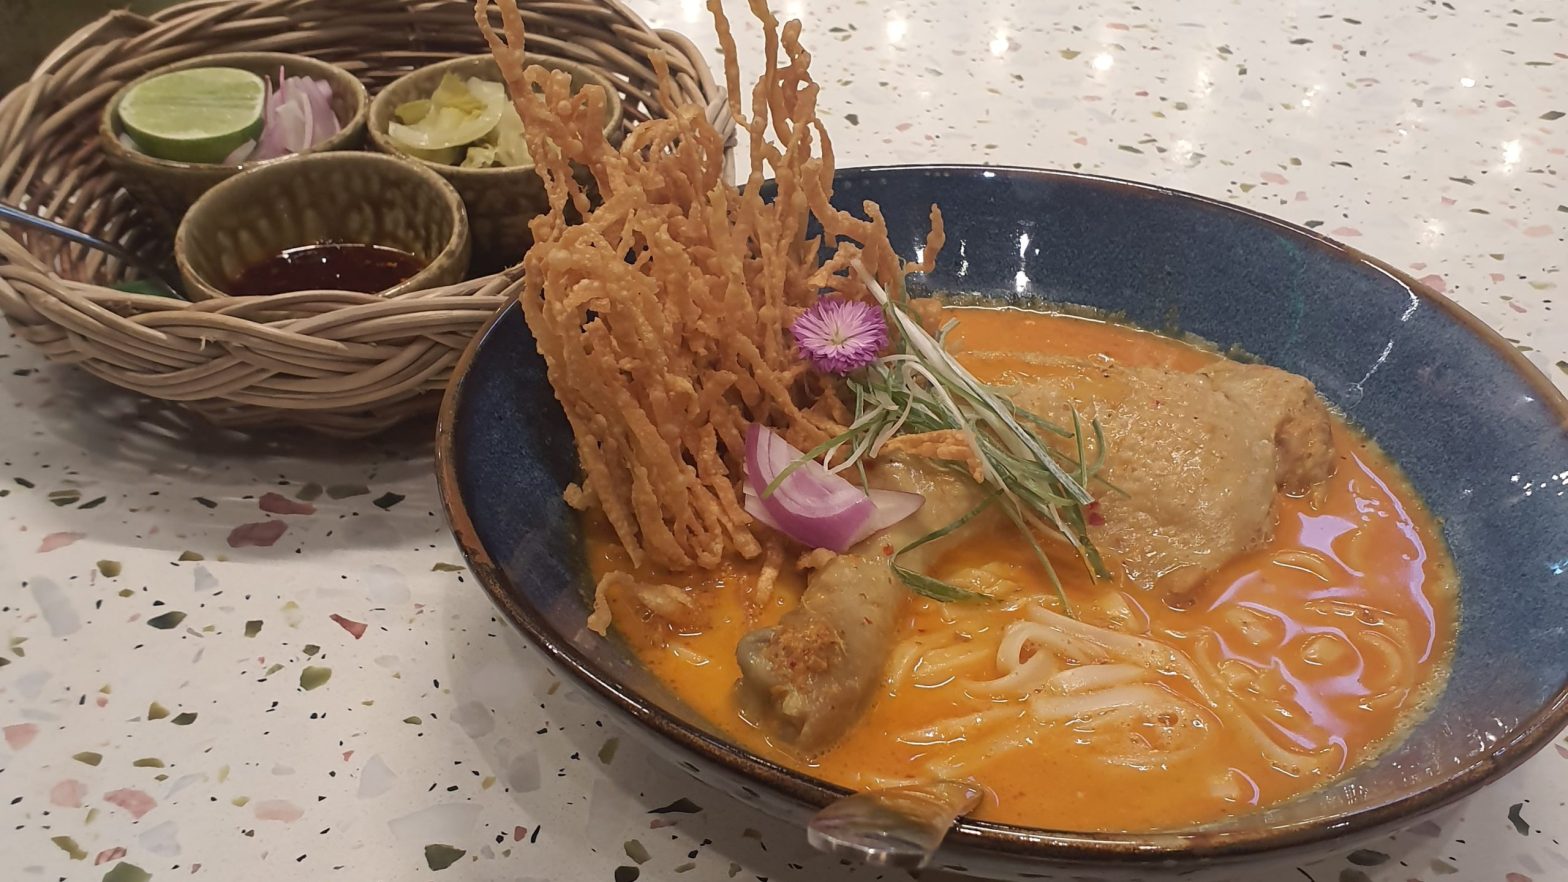 Thai Coconut Noodle Soup